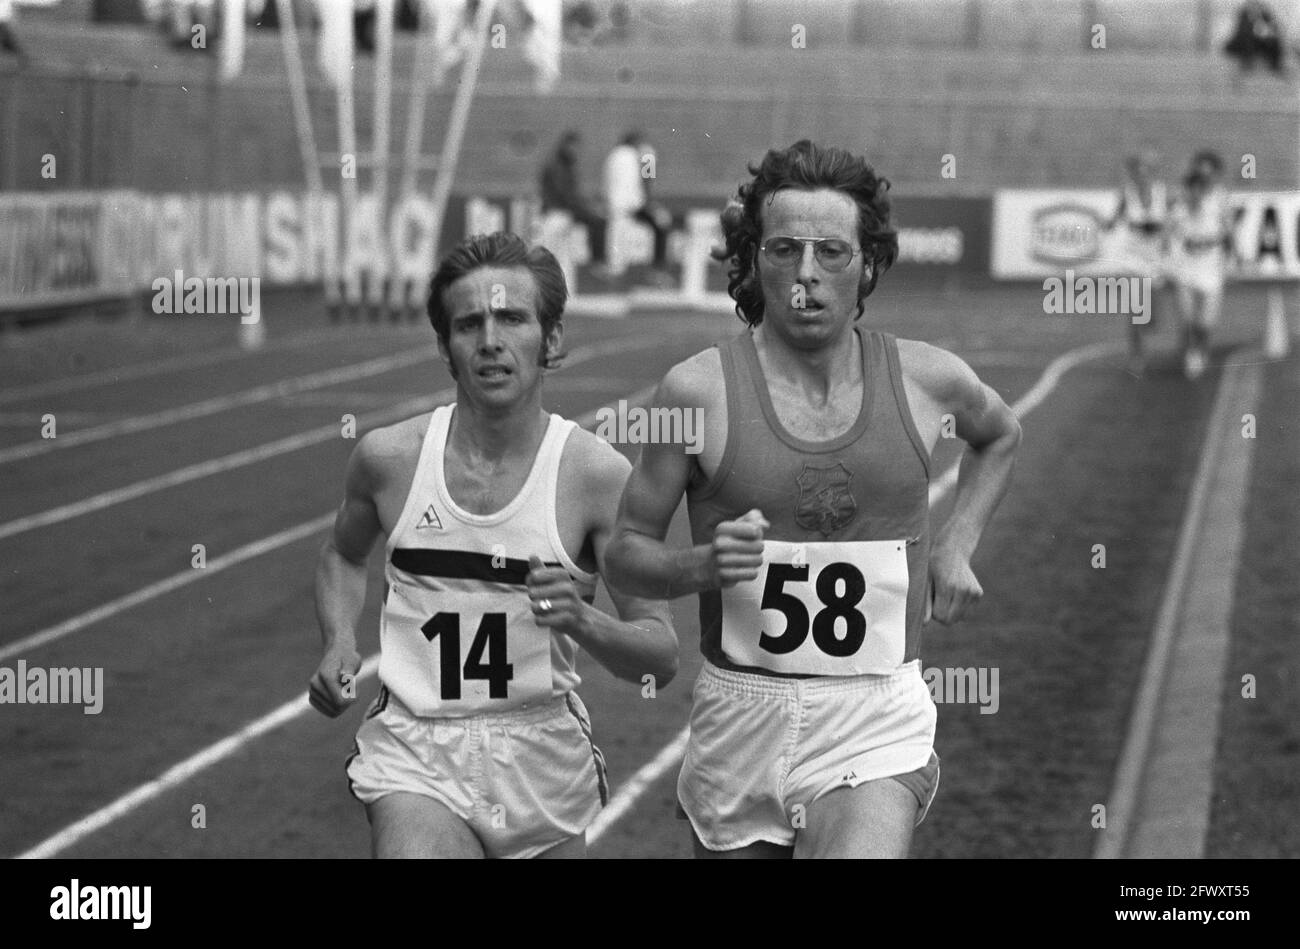 Athlétisme pays-Bas, Belgique et Allemagne de l'Ouest, hommes à Kerkrade, Jos Hermens (numéro 58) et Polleunis (numéro 14) en action, 28 juillet 1973 Banque D'Images